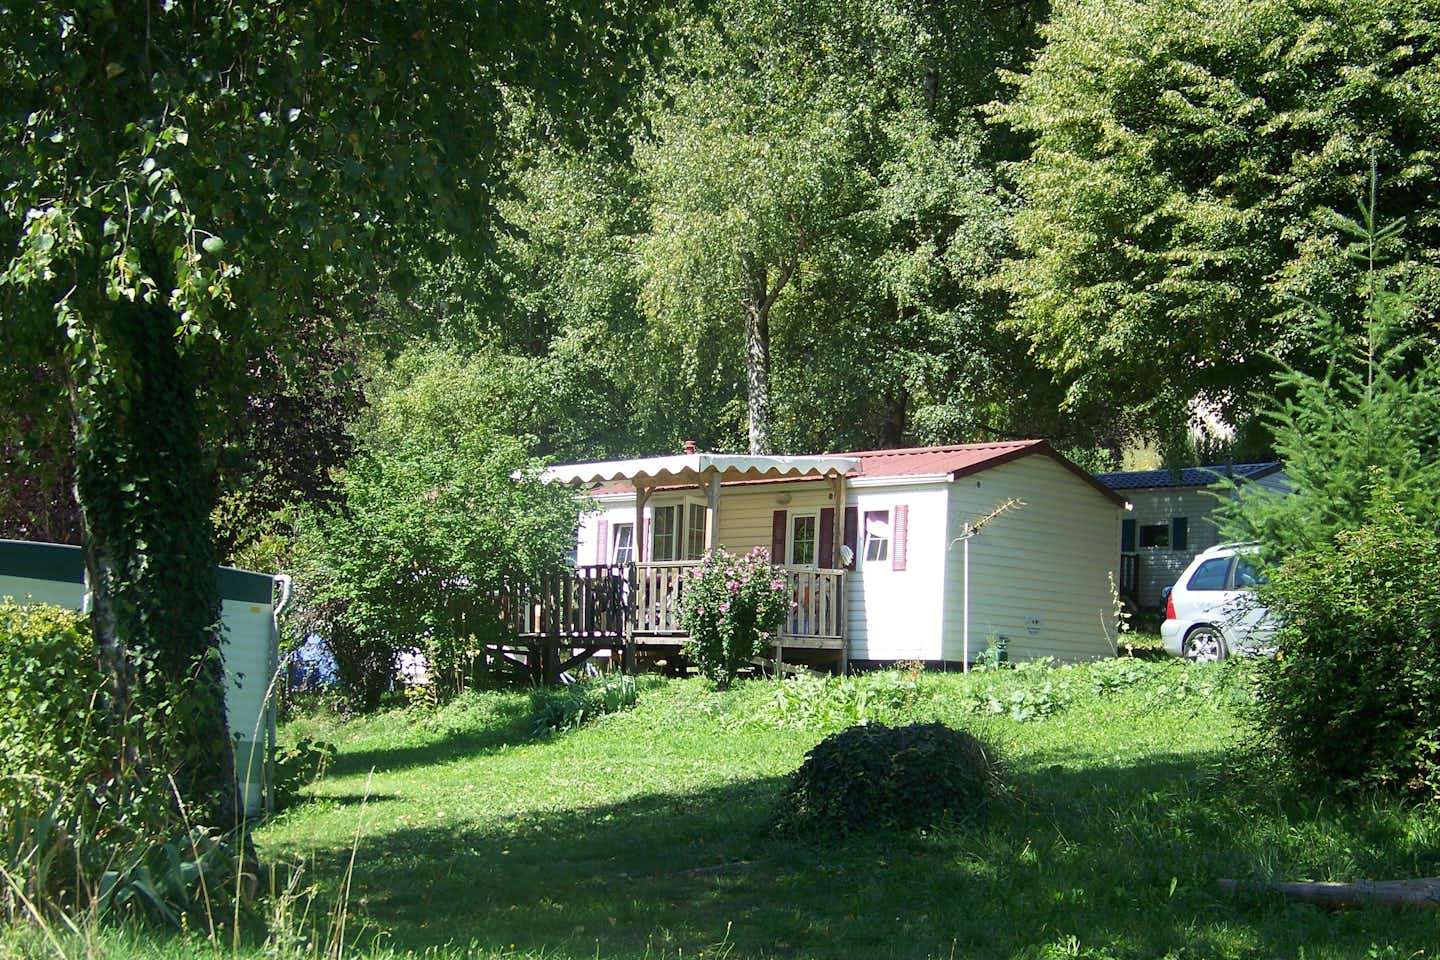 Camping-Caravaning Clair Matin - Mobilheim mit überdachter Veranda auf dem Campingplatz